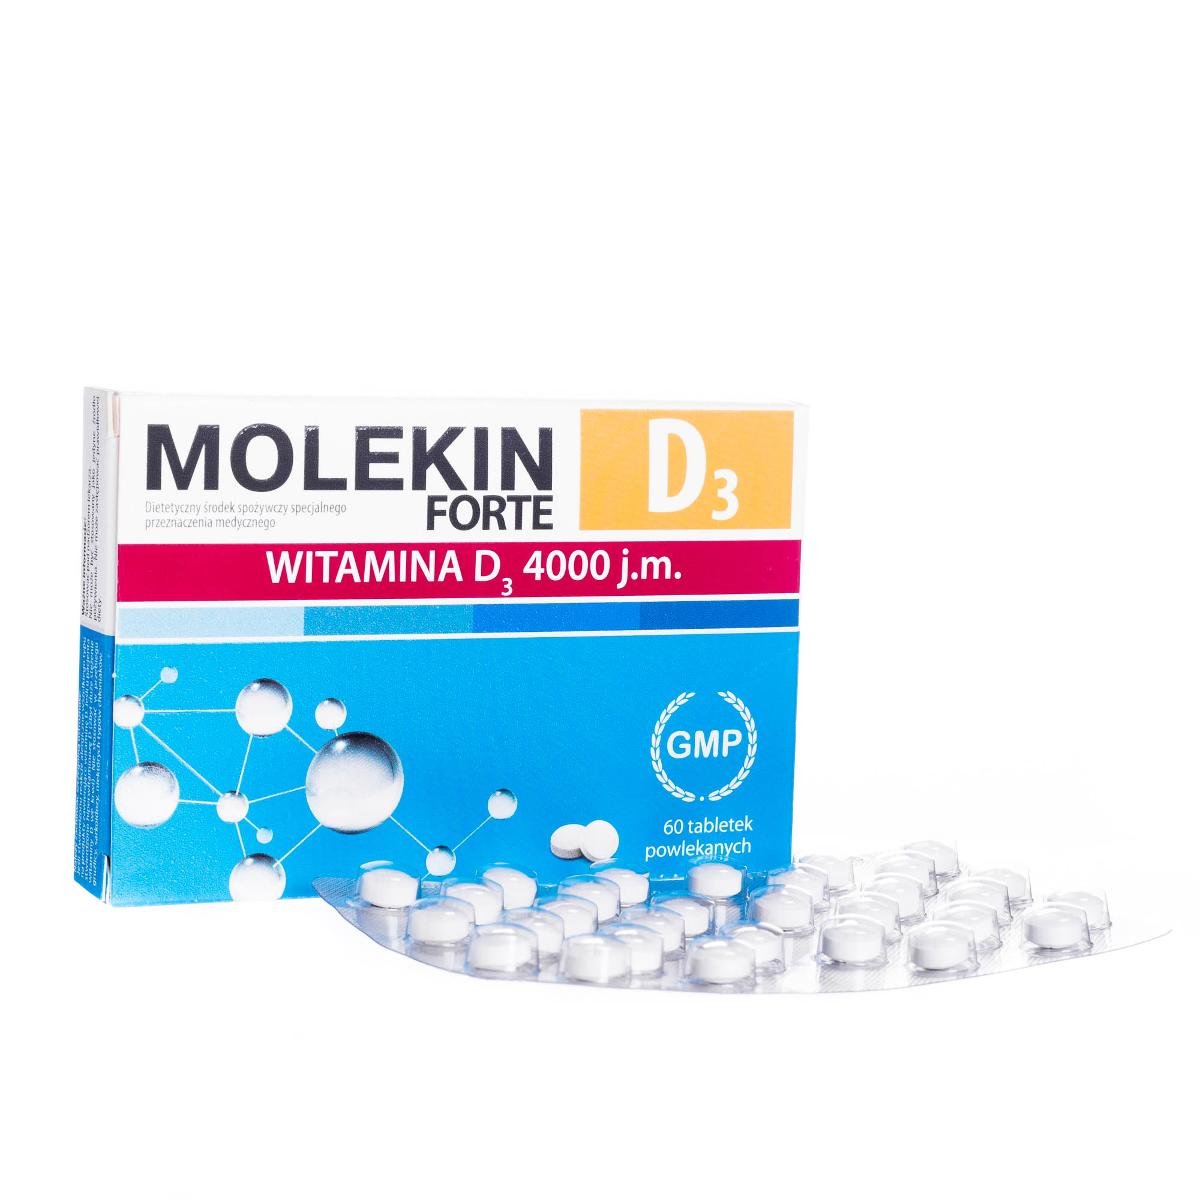 Zdjęcia - Witaminy i składniki mineralne Forte Suplement diety, Molekin D3  - środek specjalnego przeznaczenia medyc 